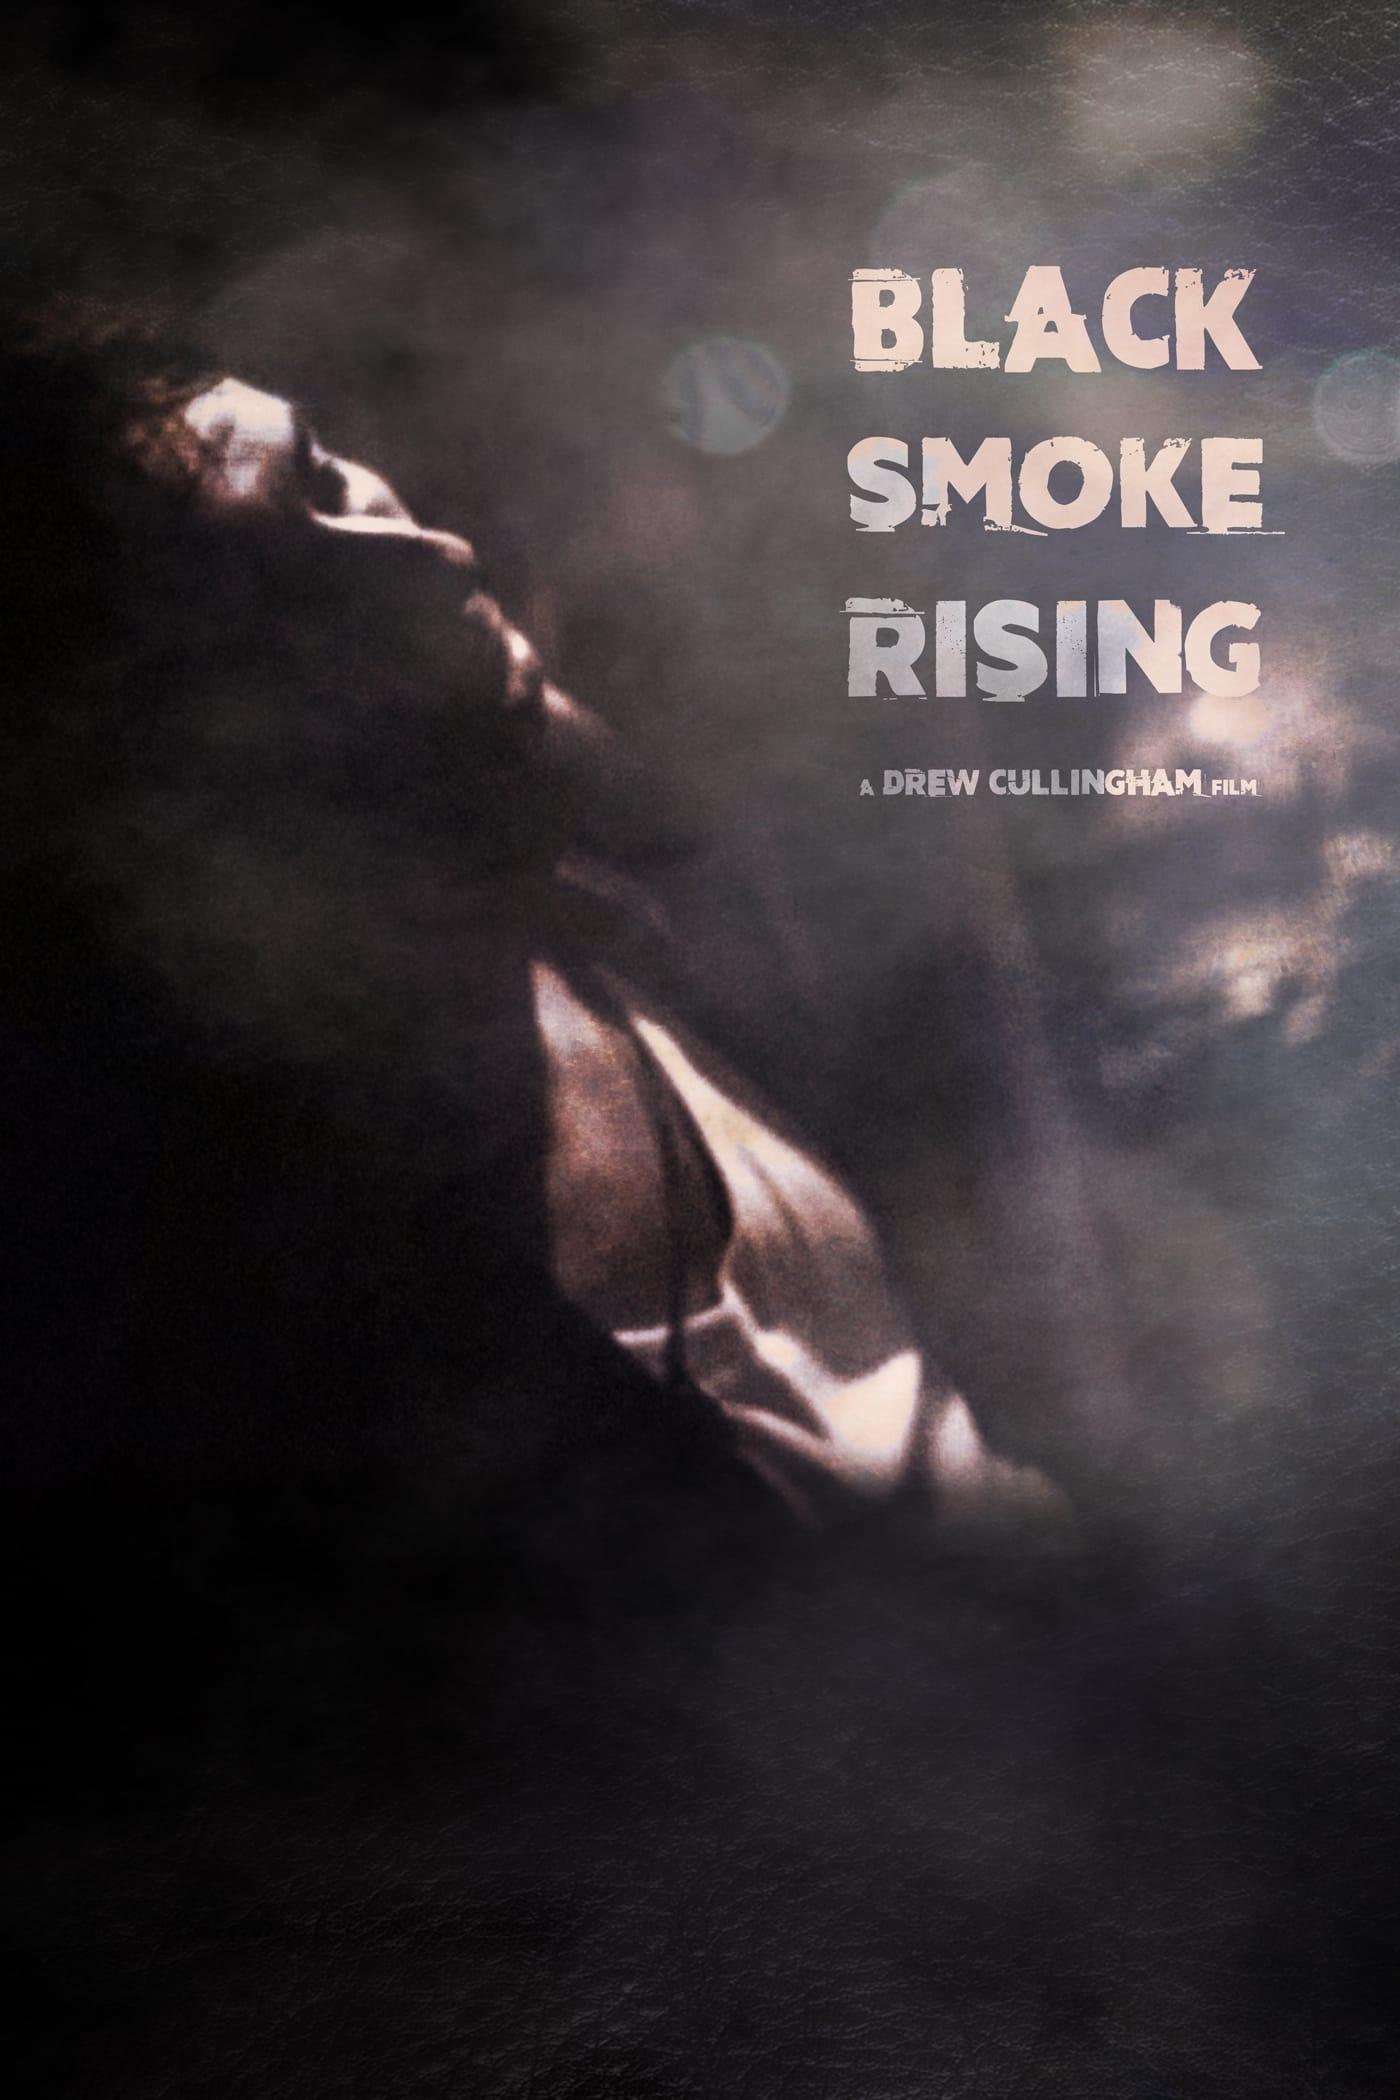 Black Smoke Rising poster